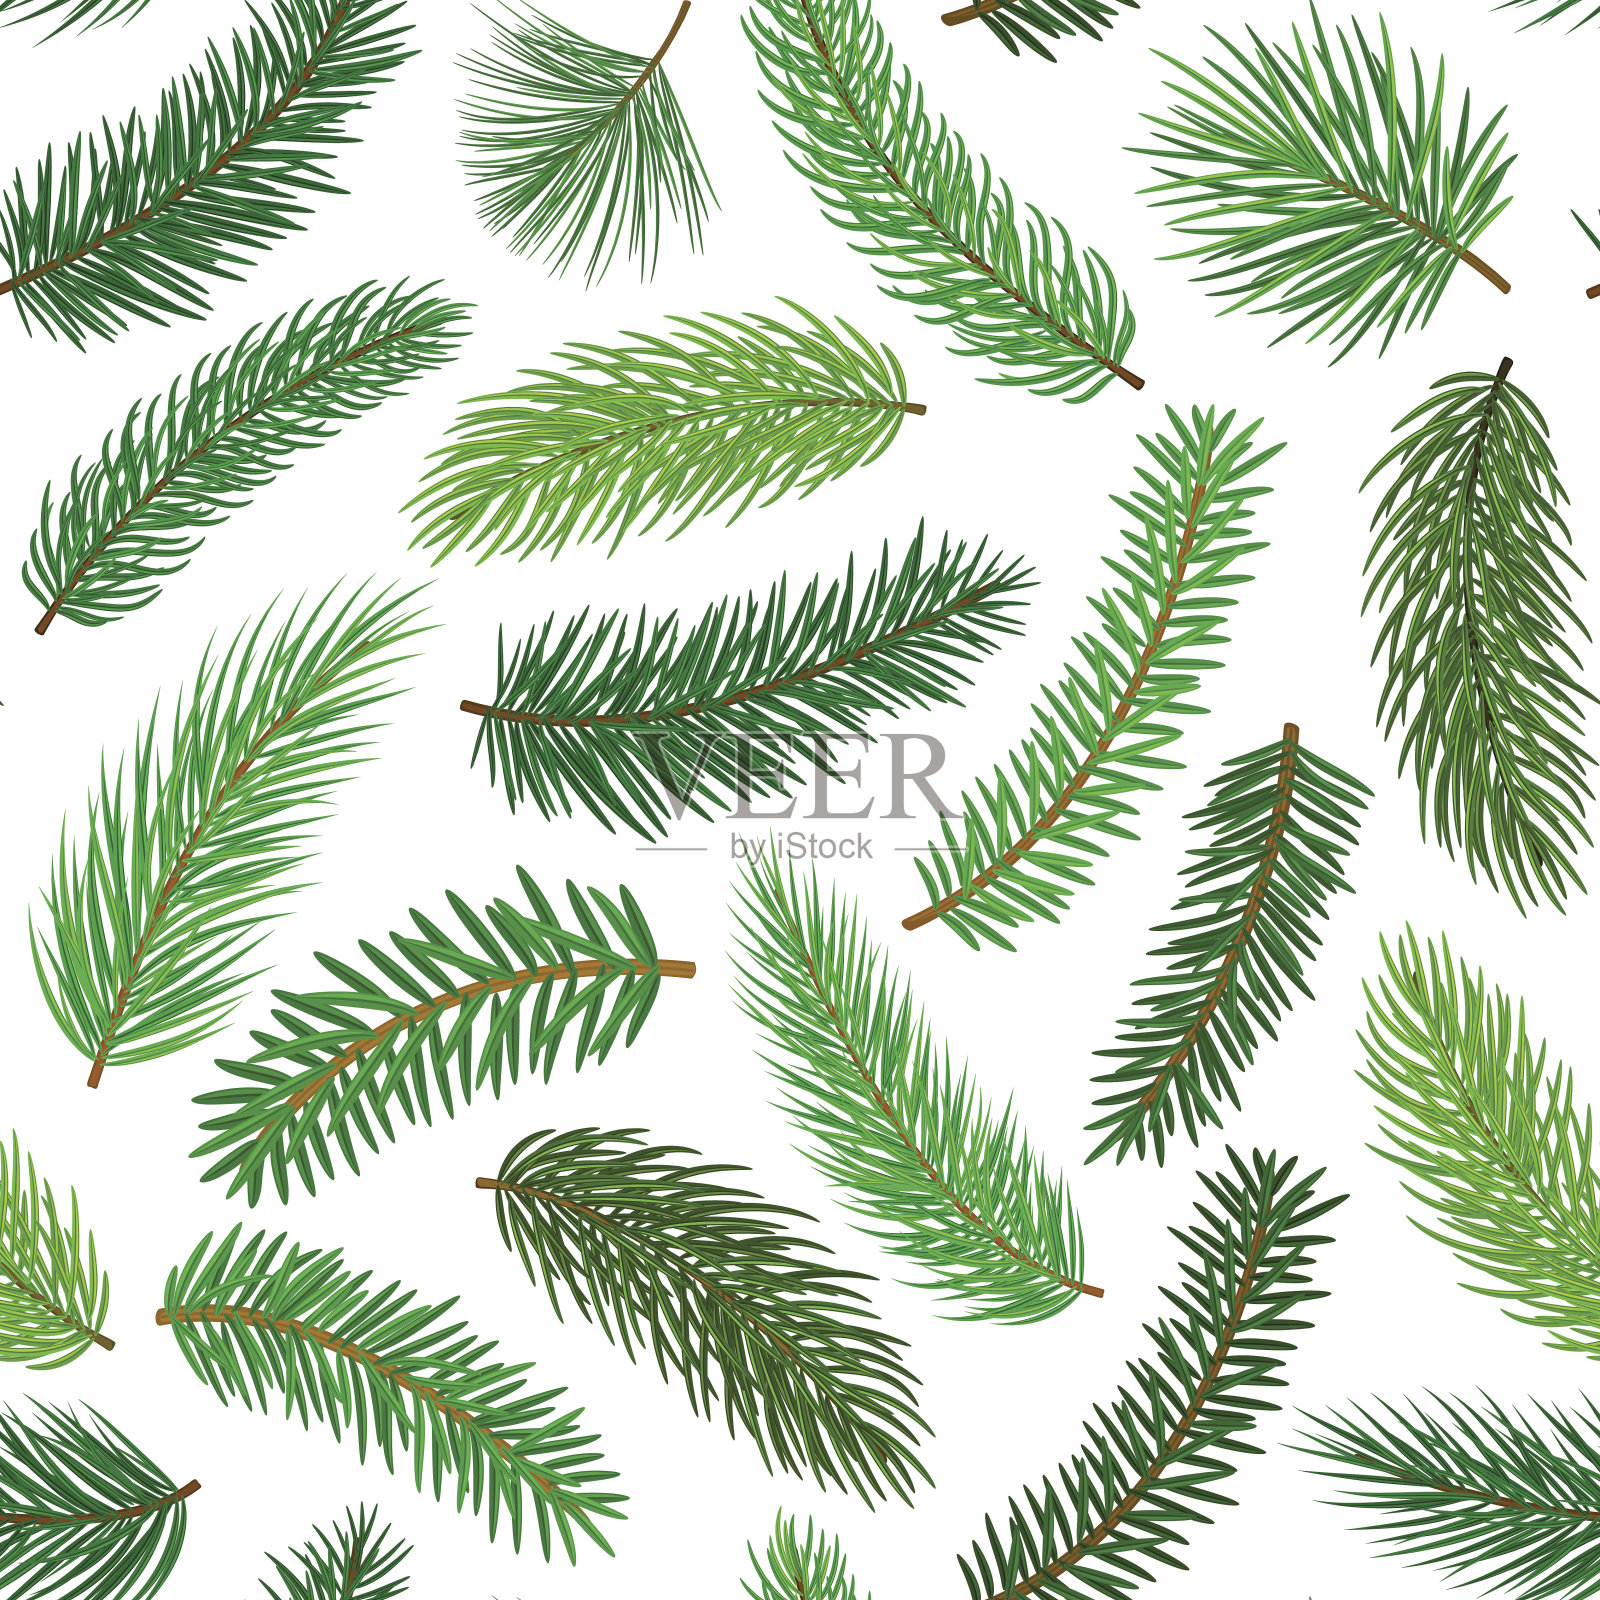 针叶常绿松树杉木杉木针枝细枝无缝格局插画图片素材